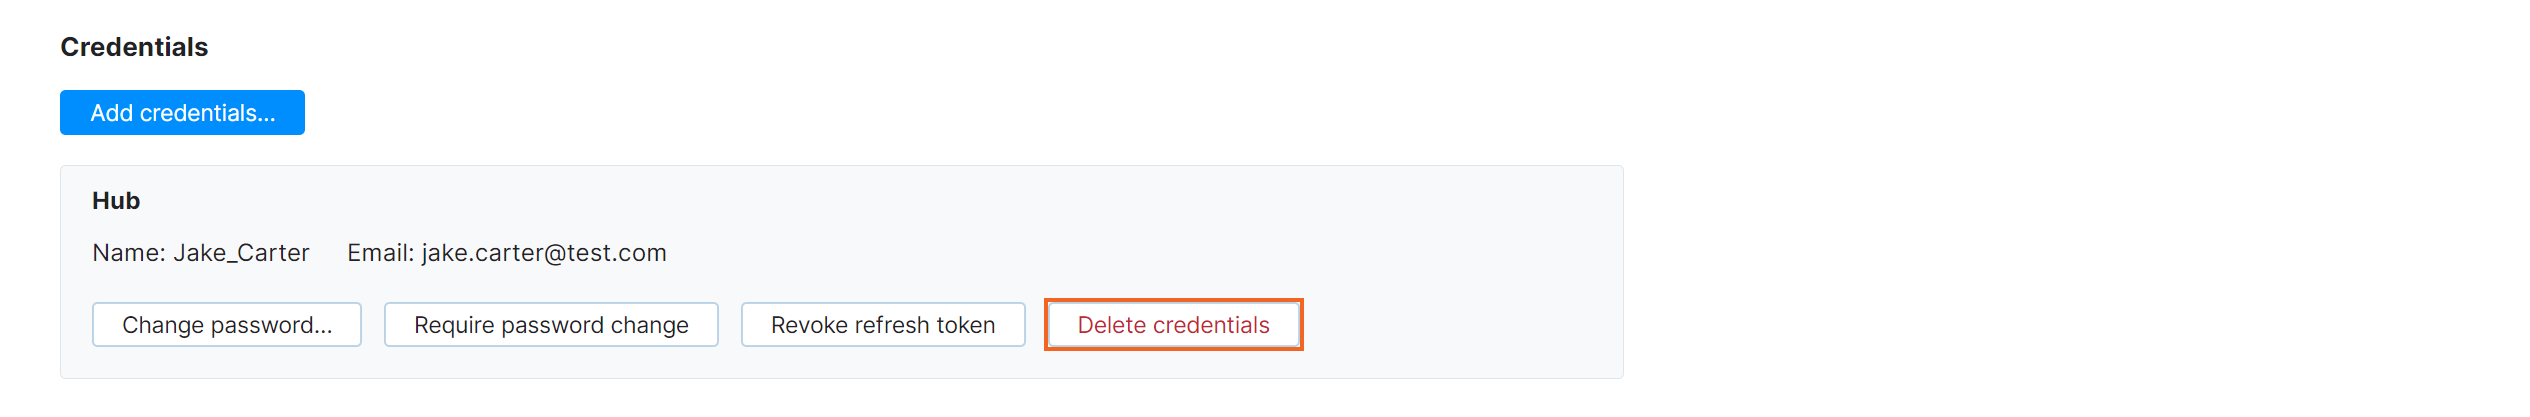 Delete credentials in profile